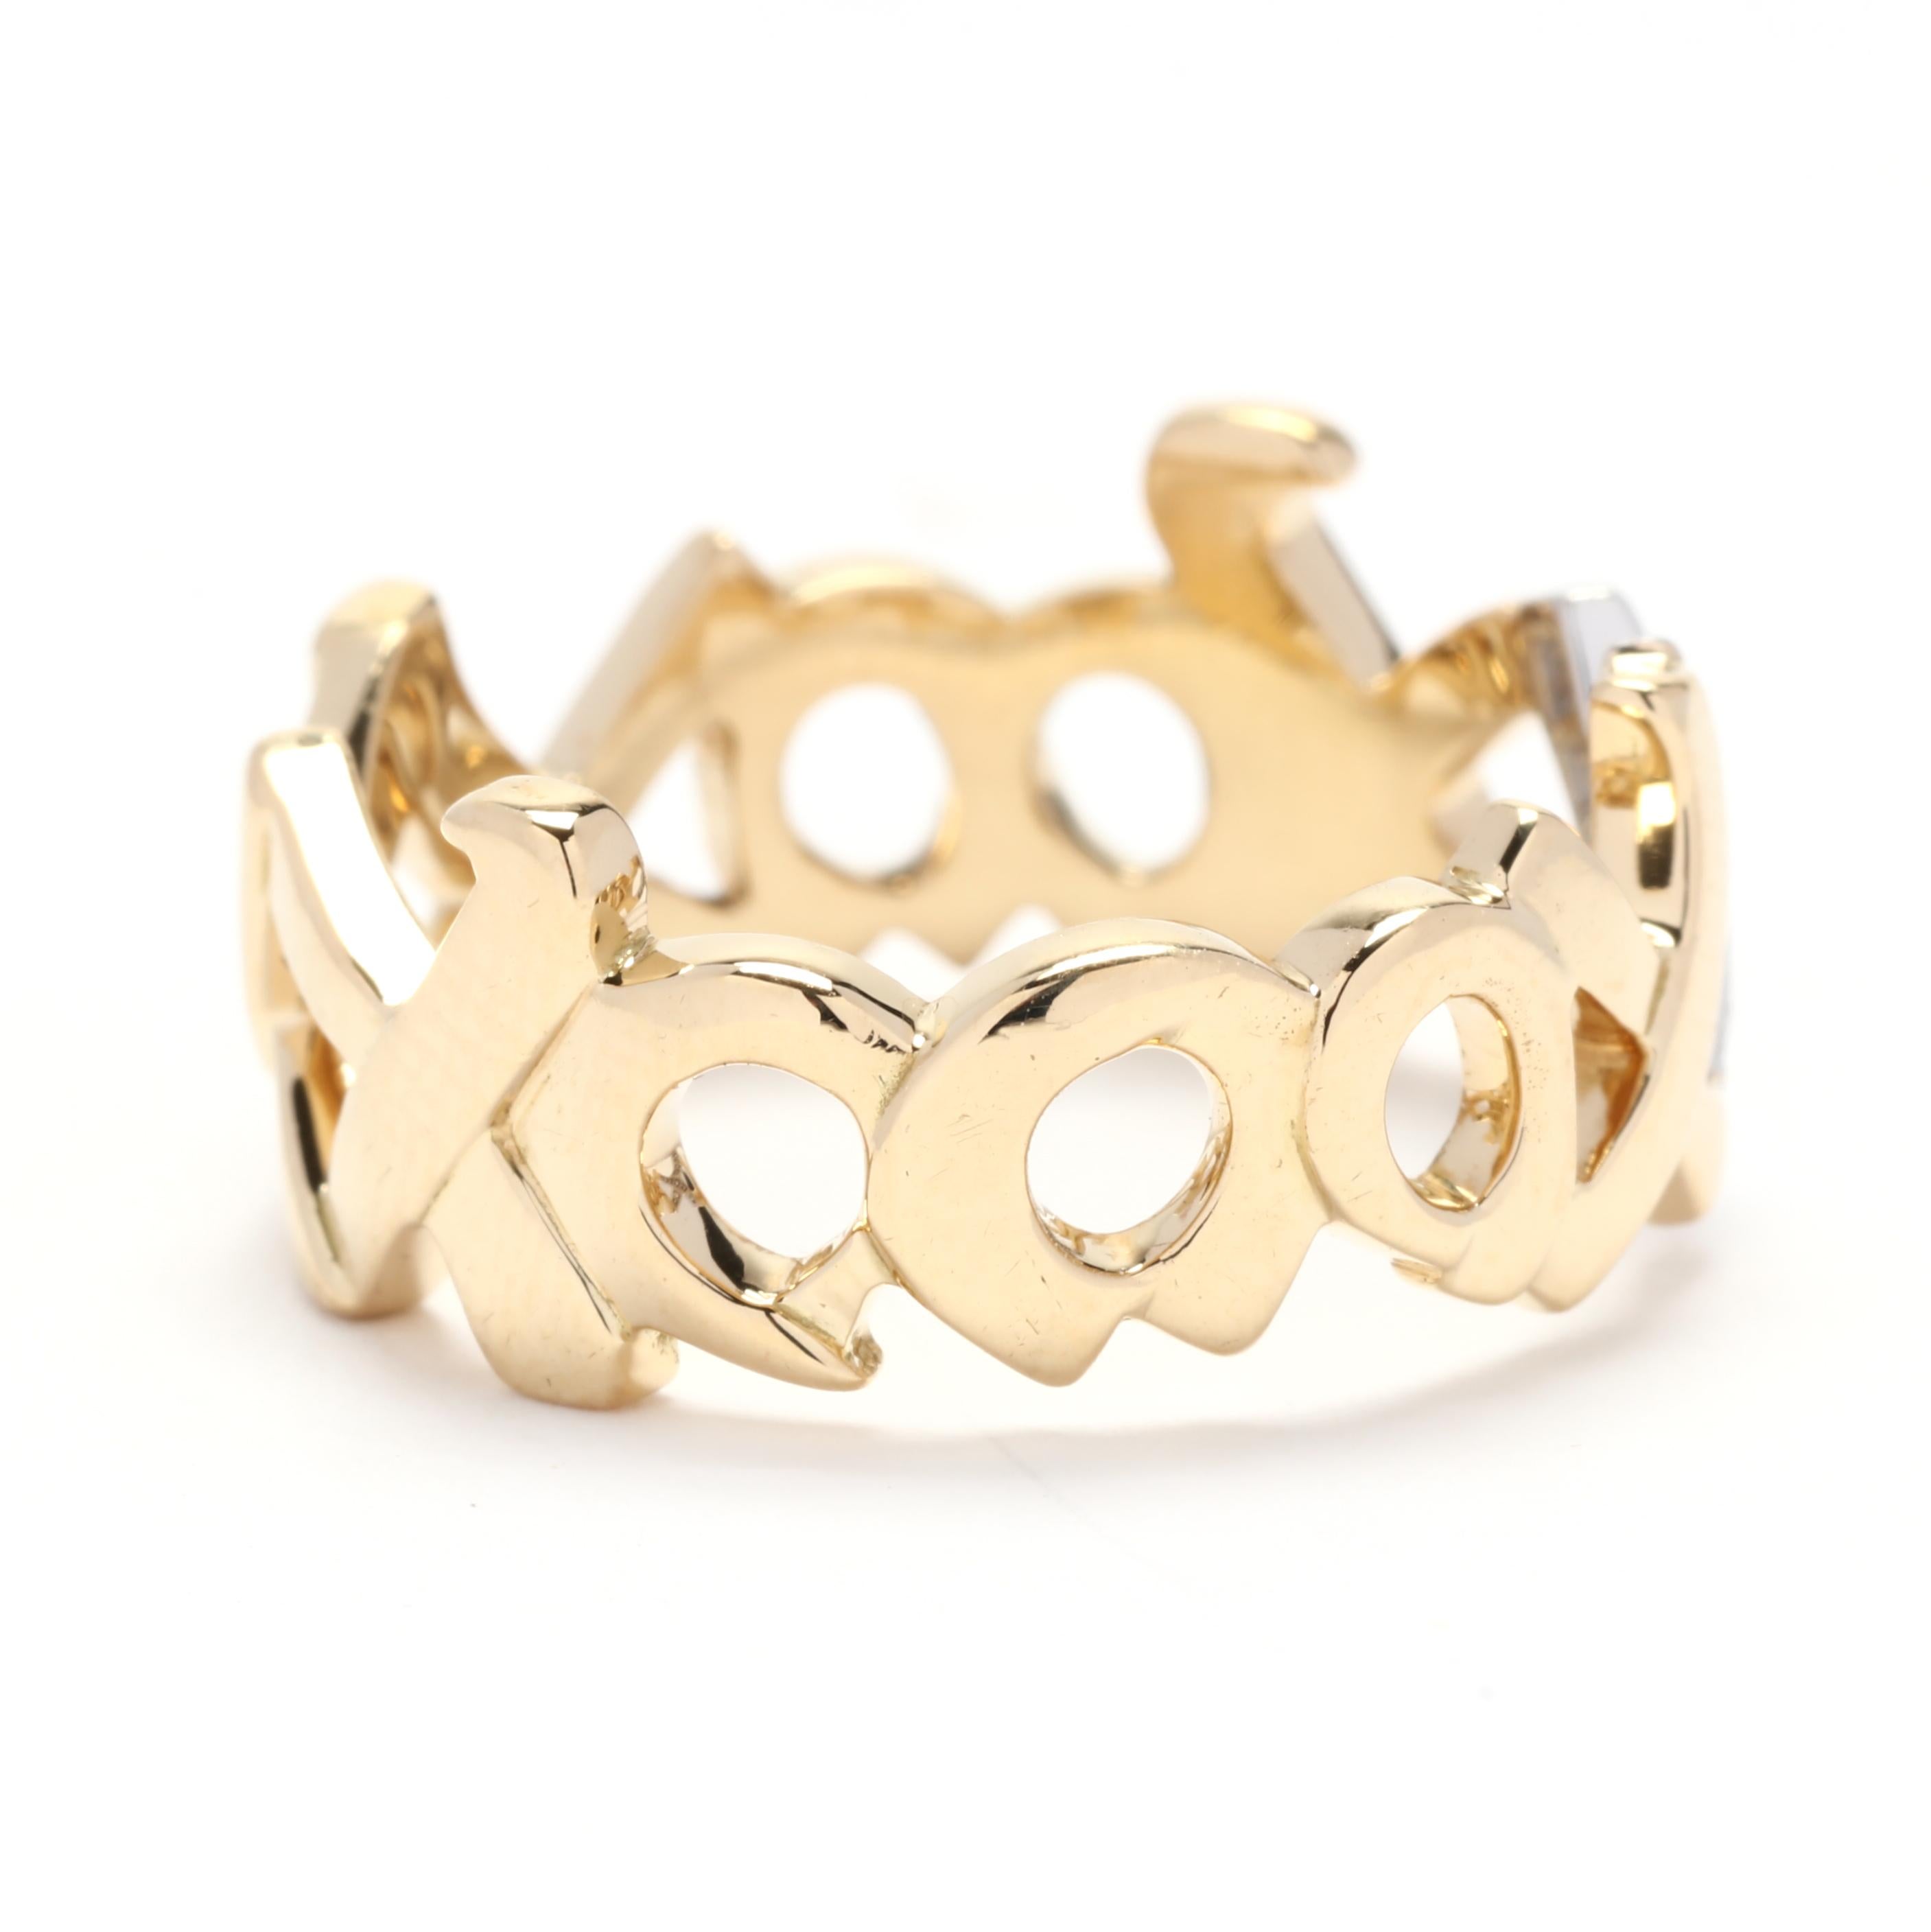 Verleihen Sie Ihrer Schmucksammlung einen Hauch von Raffinesse und Luxus mit diesem atemberaubenden Paloma Picasso XO Diamant- und Goldring von Tiffany and Co. Dieser aus Platin und 18-karätigem Gelbgold gefertigte Ring zeigt das ikonische XO-Design